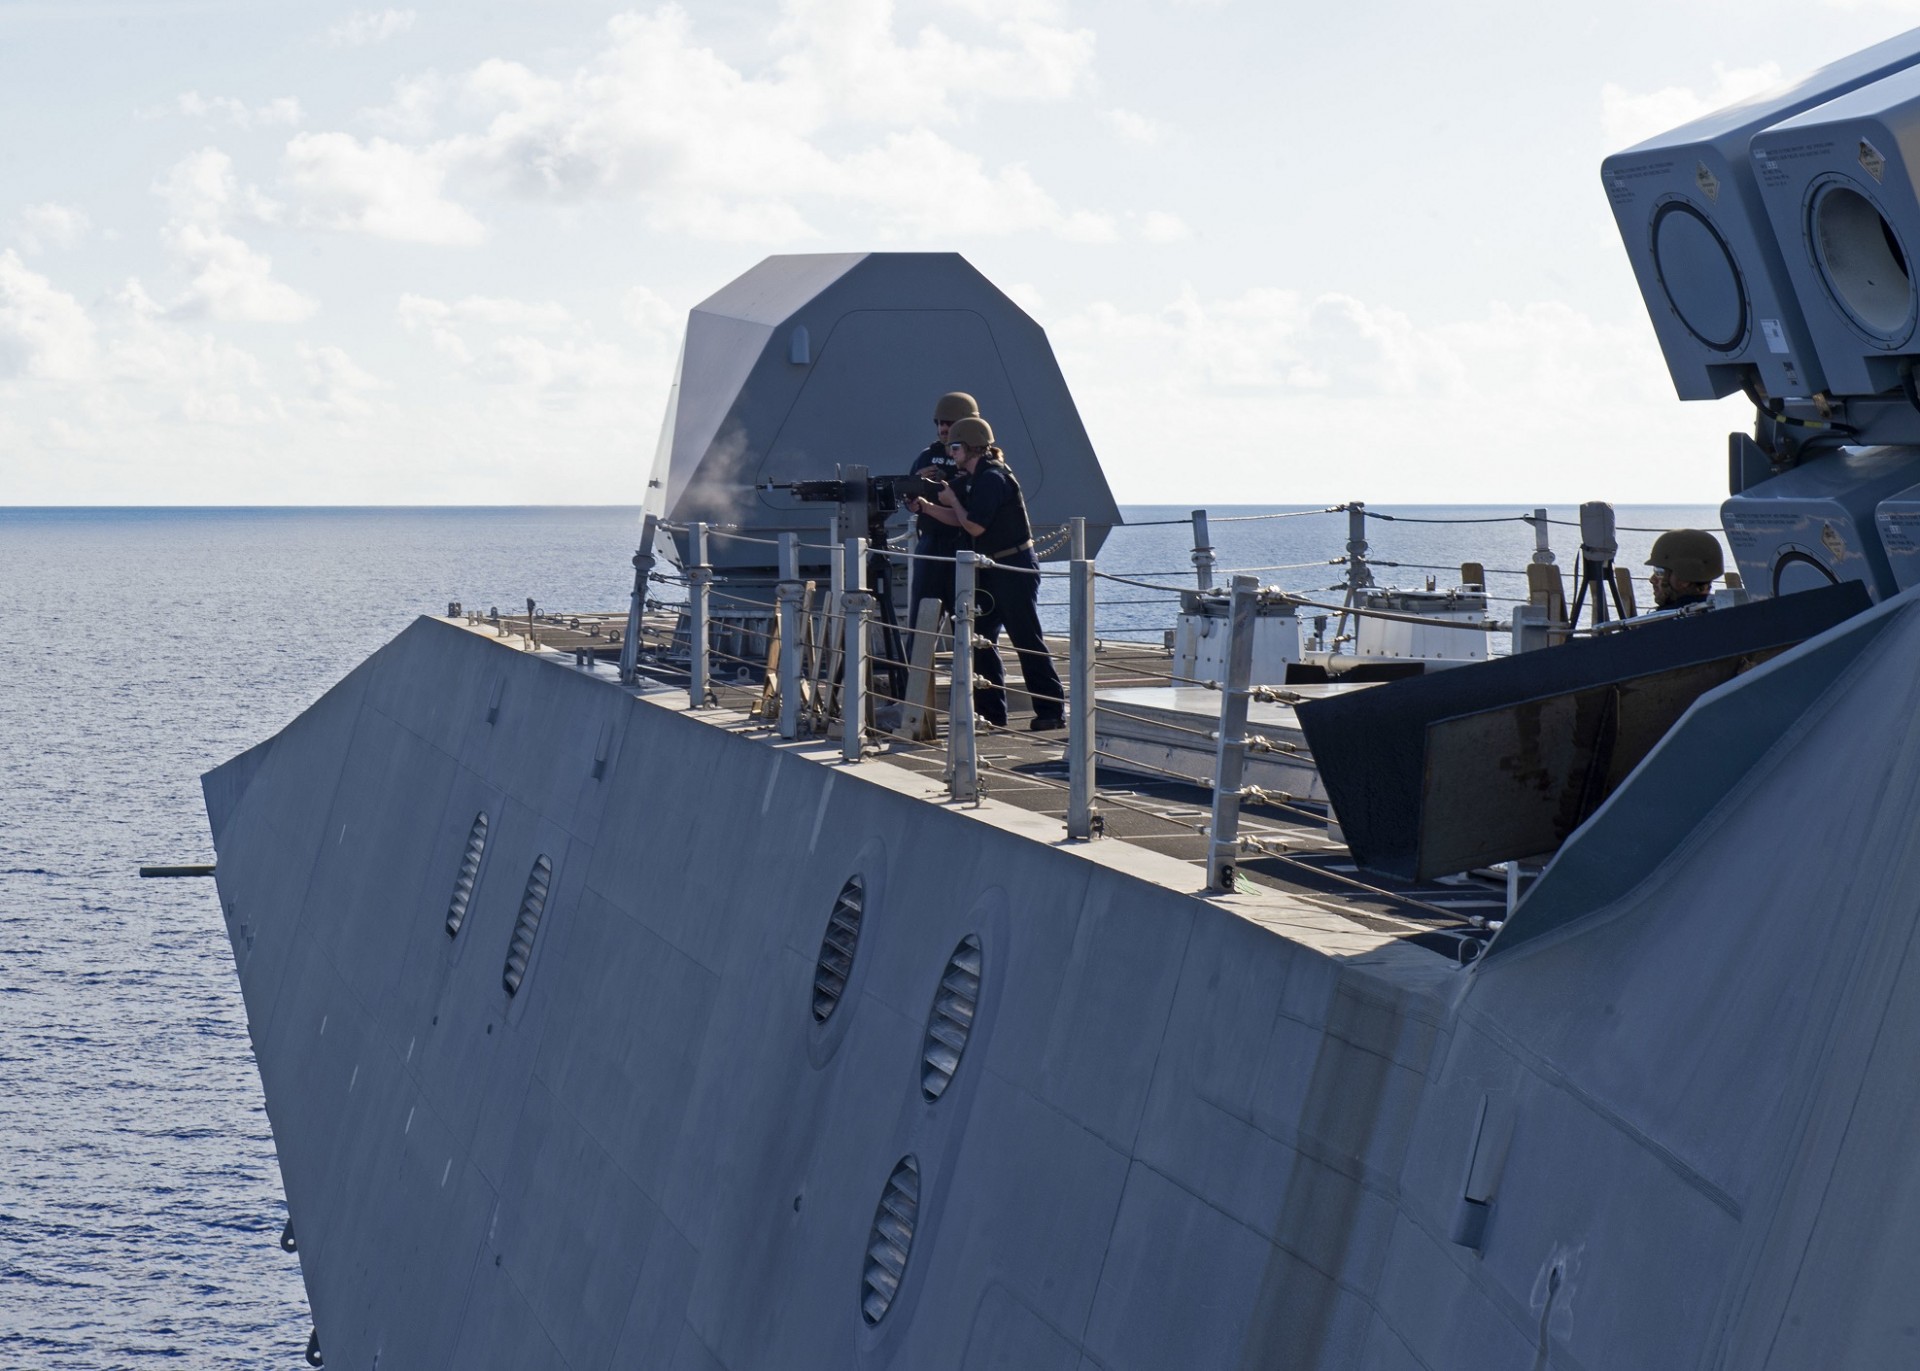 Okręt do działań przybrzeżnych USS “Gabrielle Giffords” na Morzu Południowochińskim. Zdjęcie z 26 czerwca 2020 roku. Fot. Brenton Poyser/US Navy